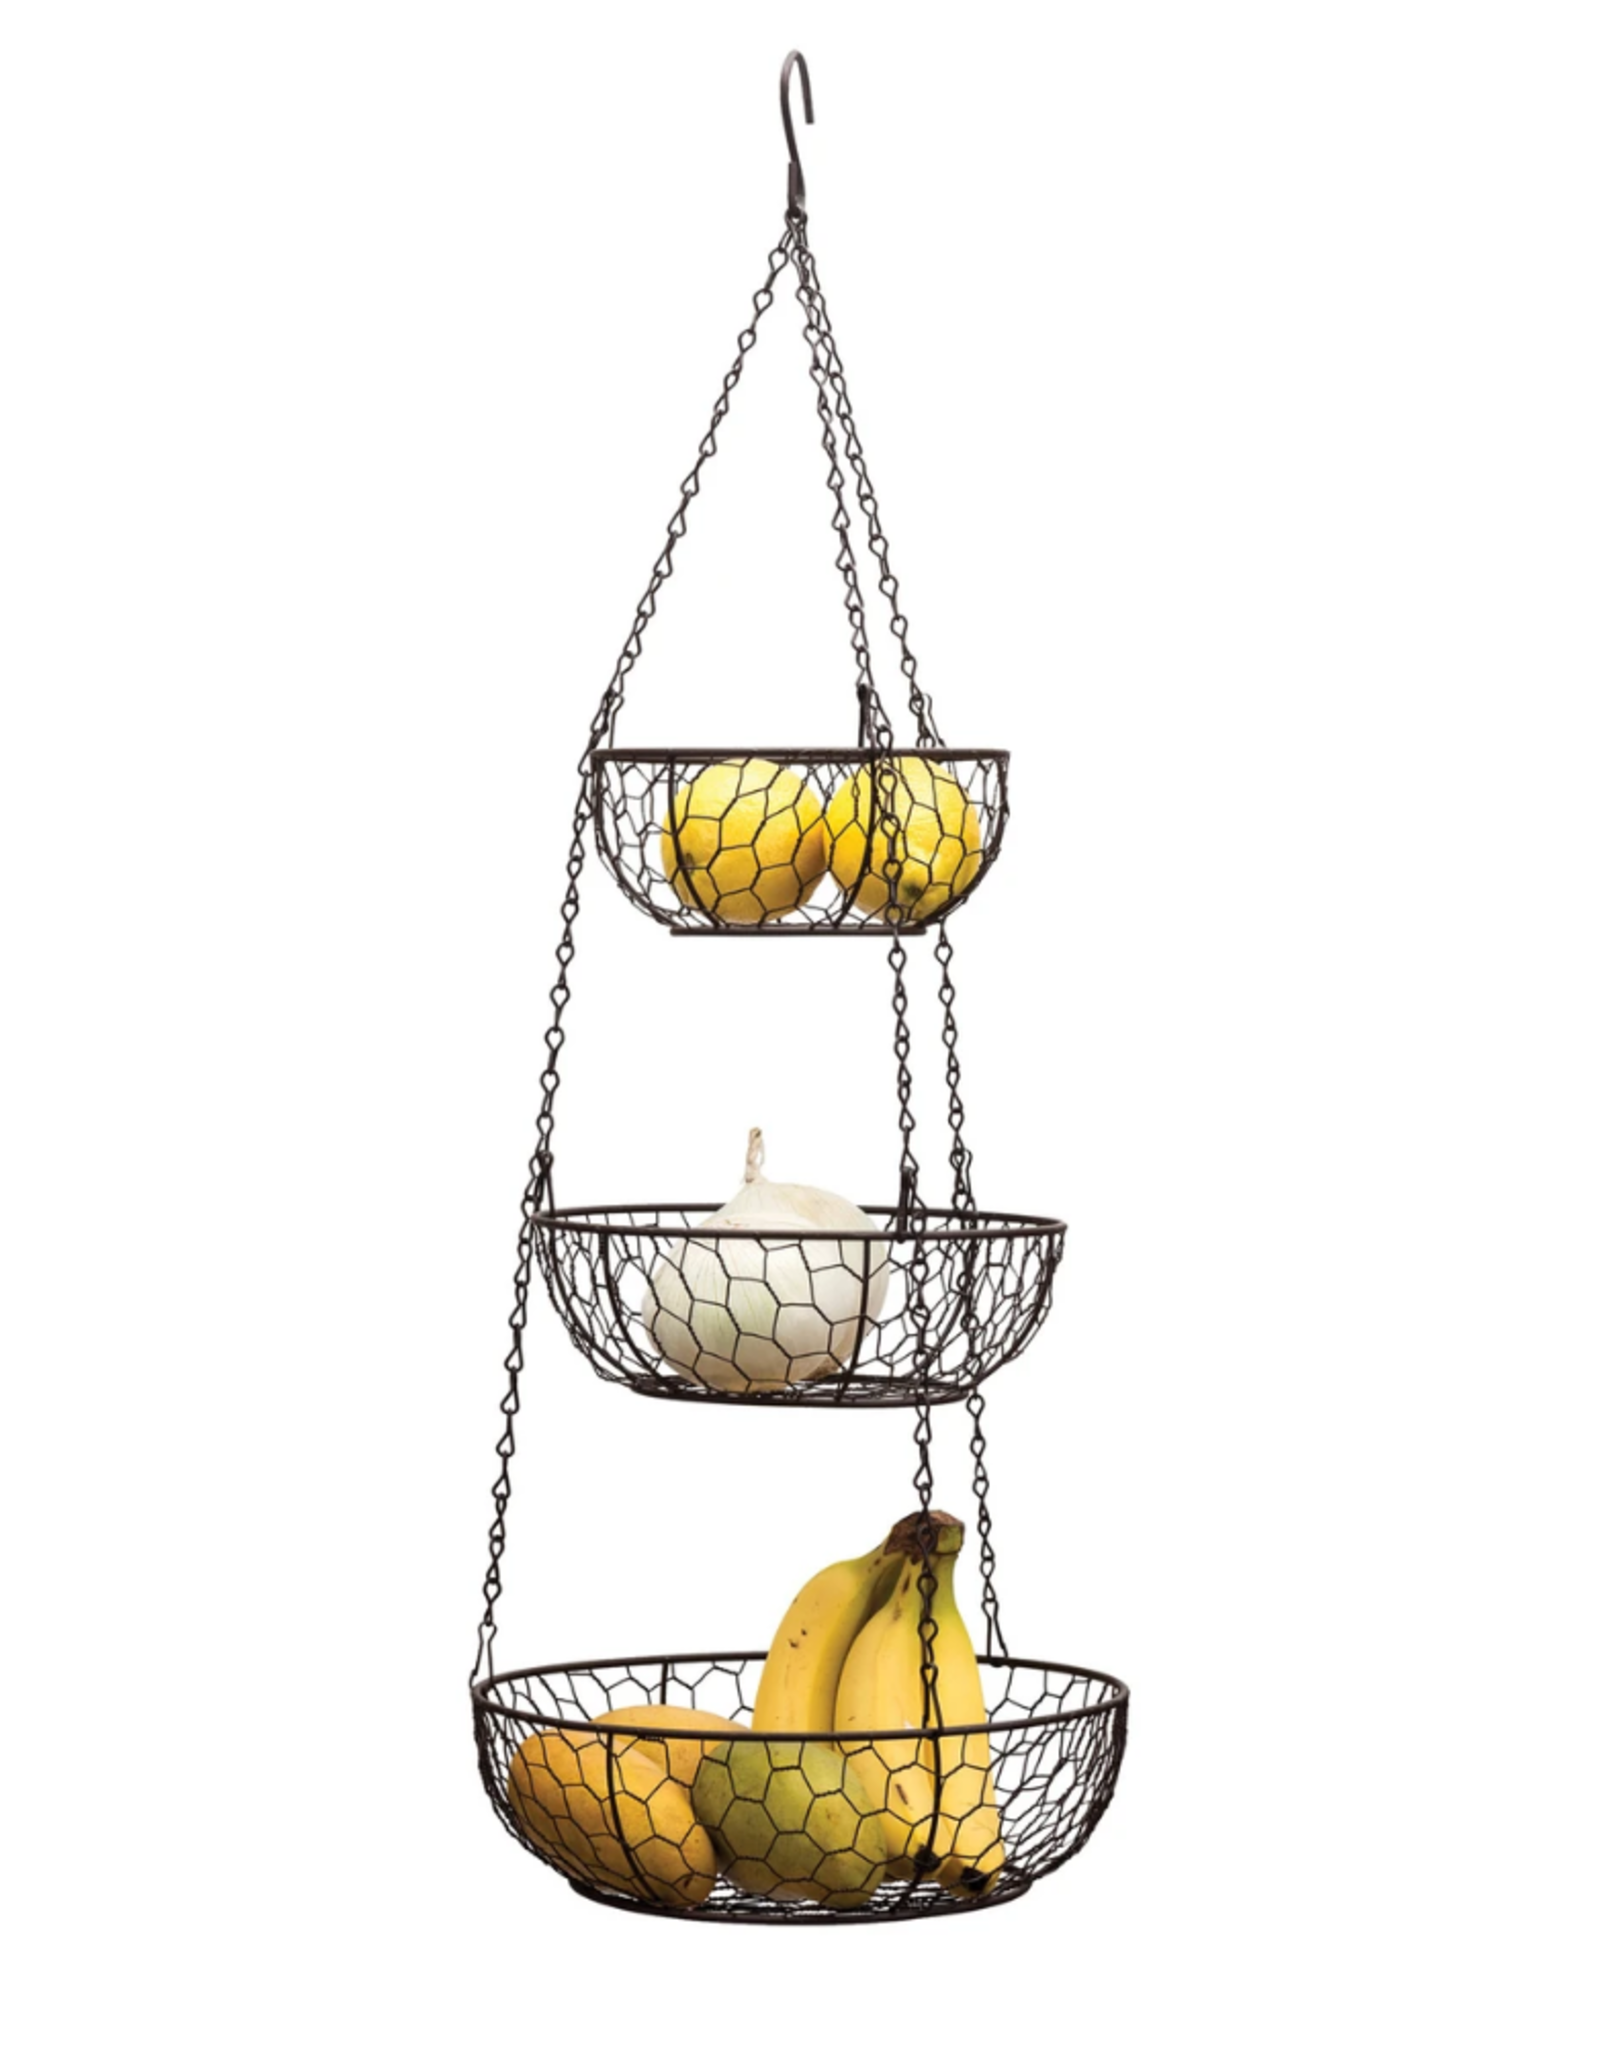 RSVP Hanging Basket, Chicken Wire